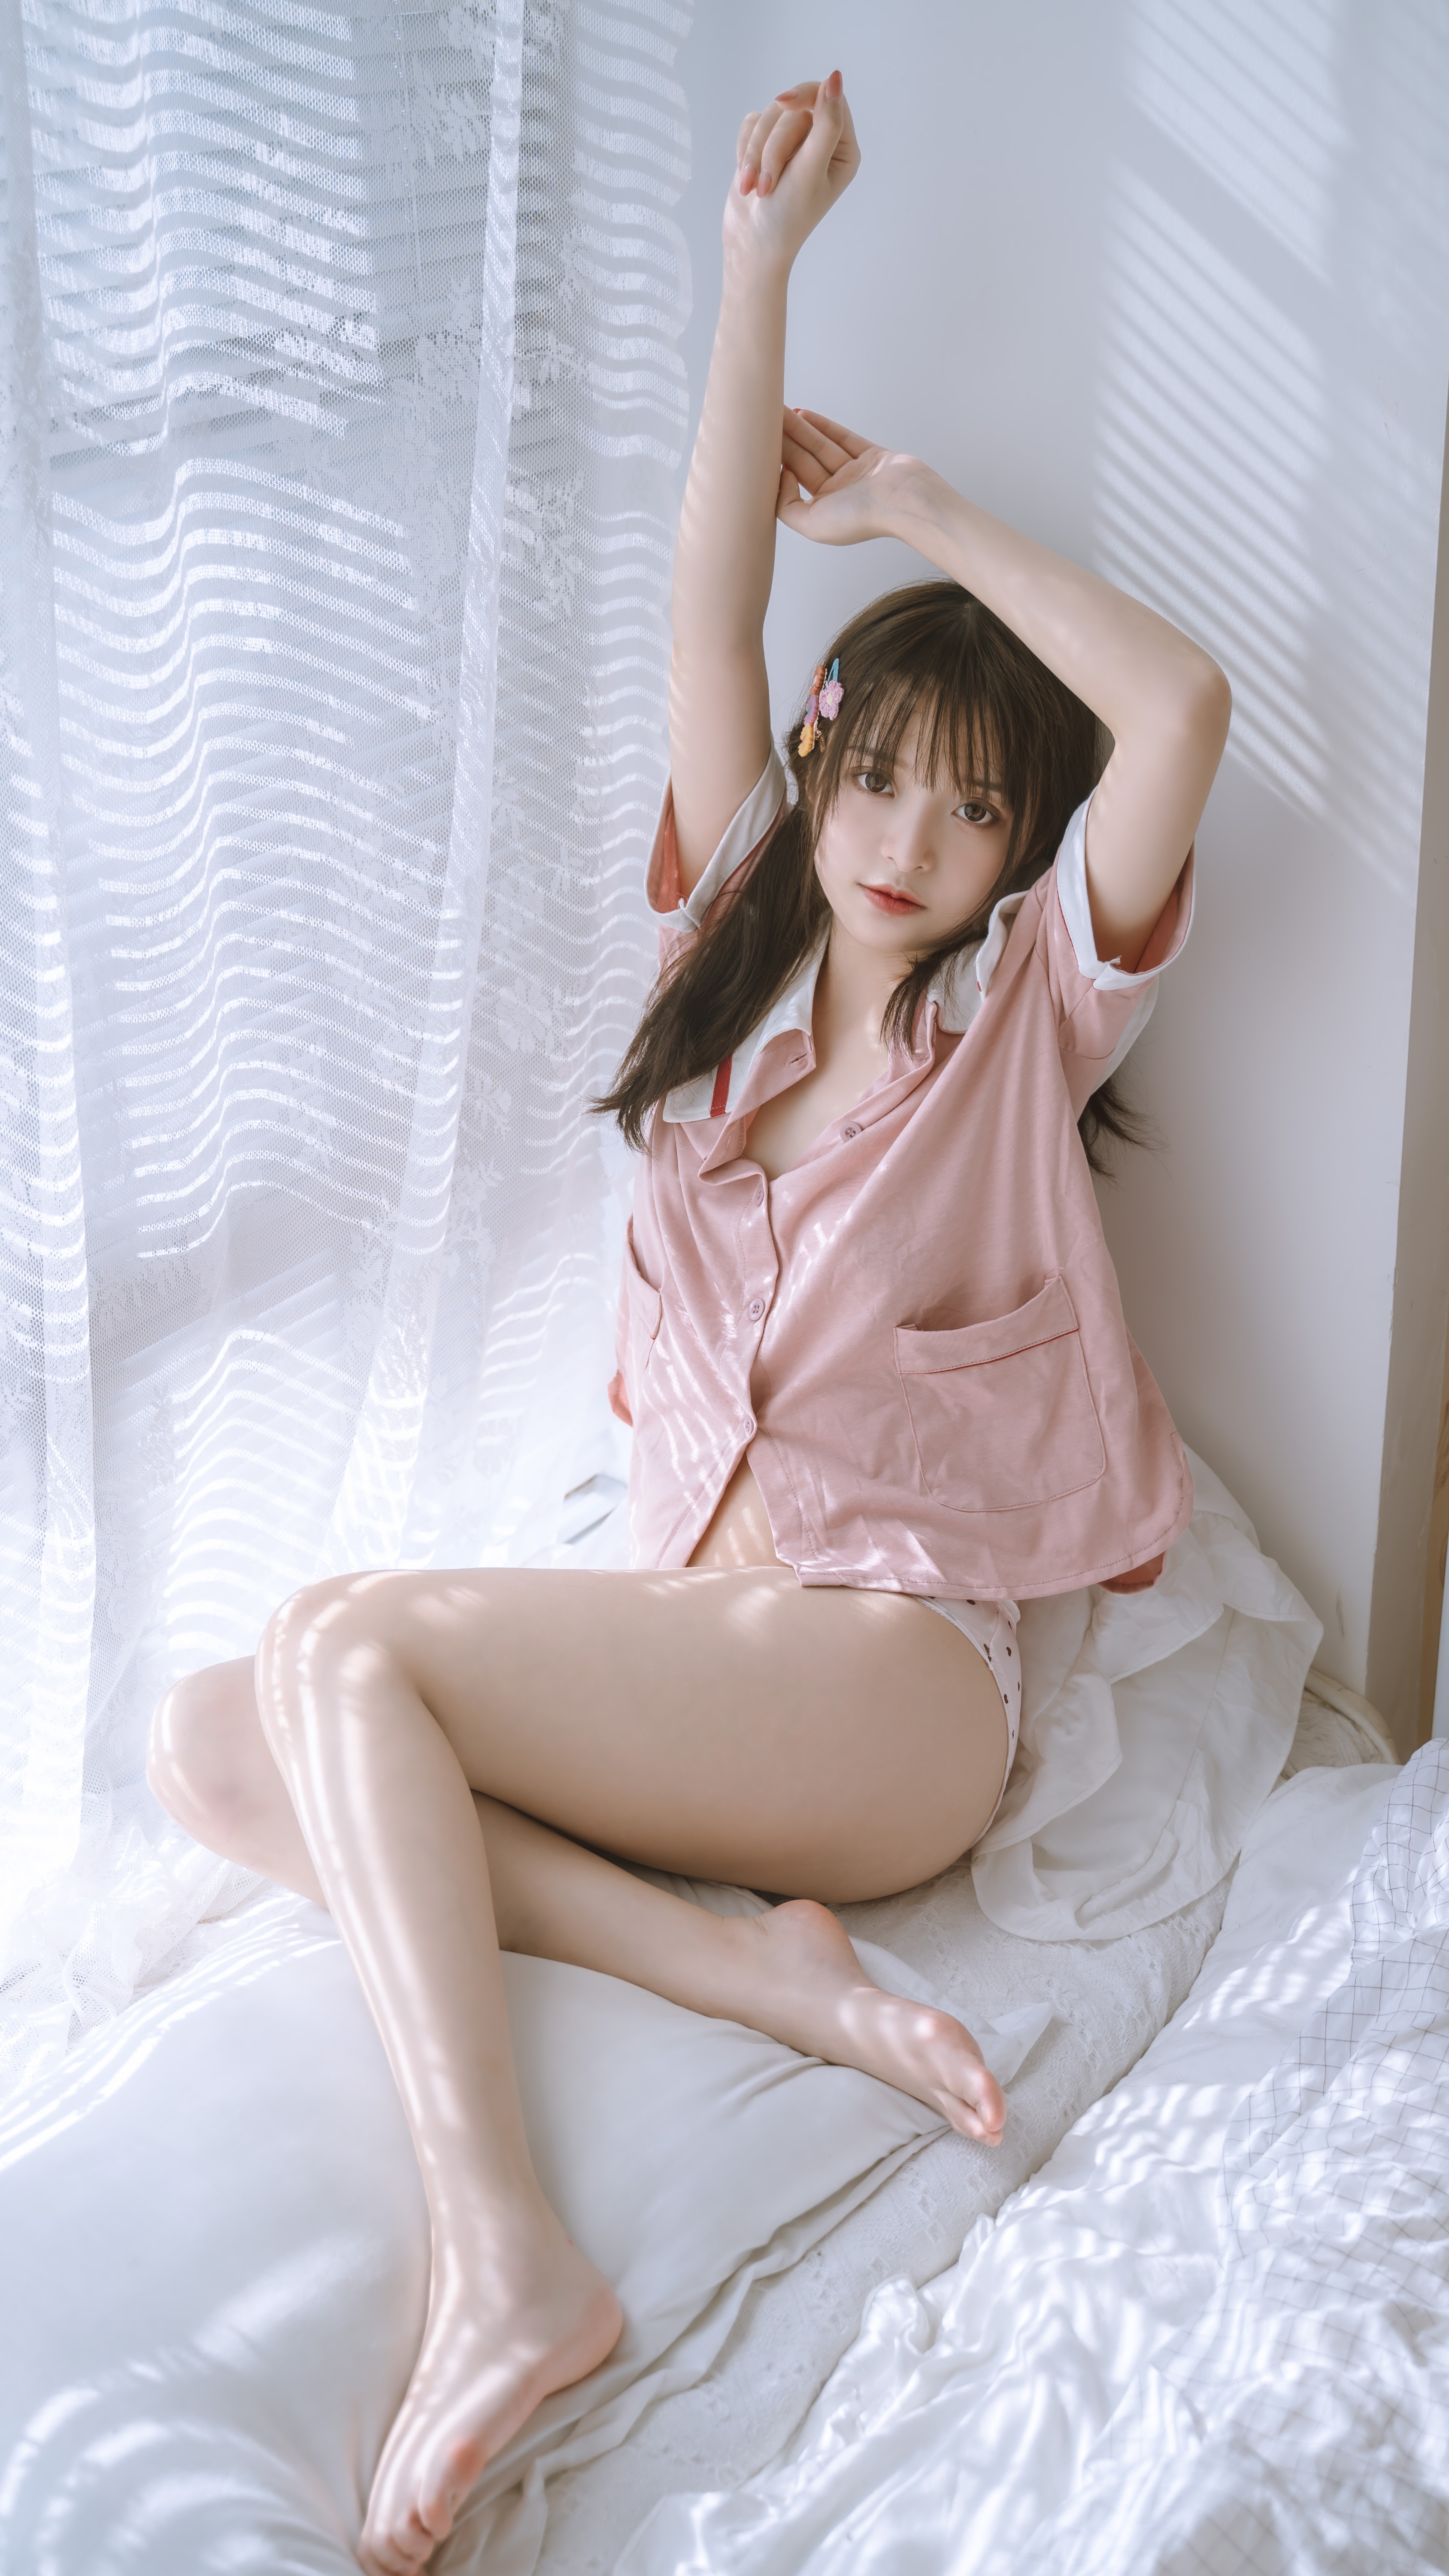 People 3376x6000 women Chinese model dark hair looking at viewer arms up pink shirt white panties thighs in bed Asian Neko Koyoshi